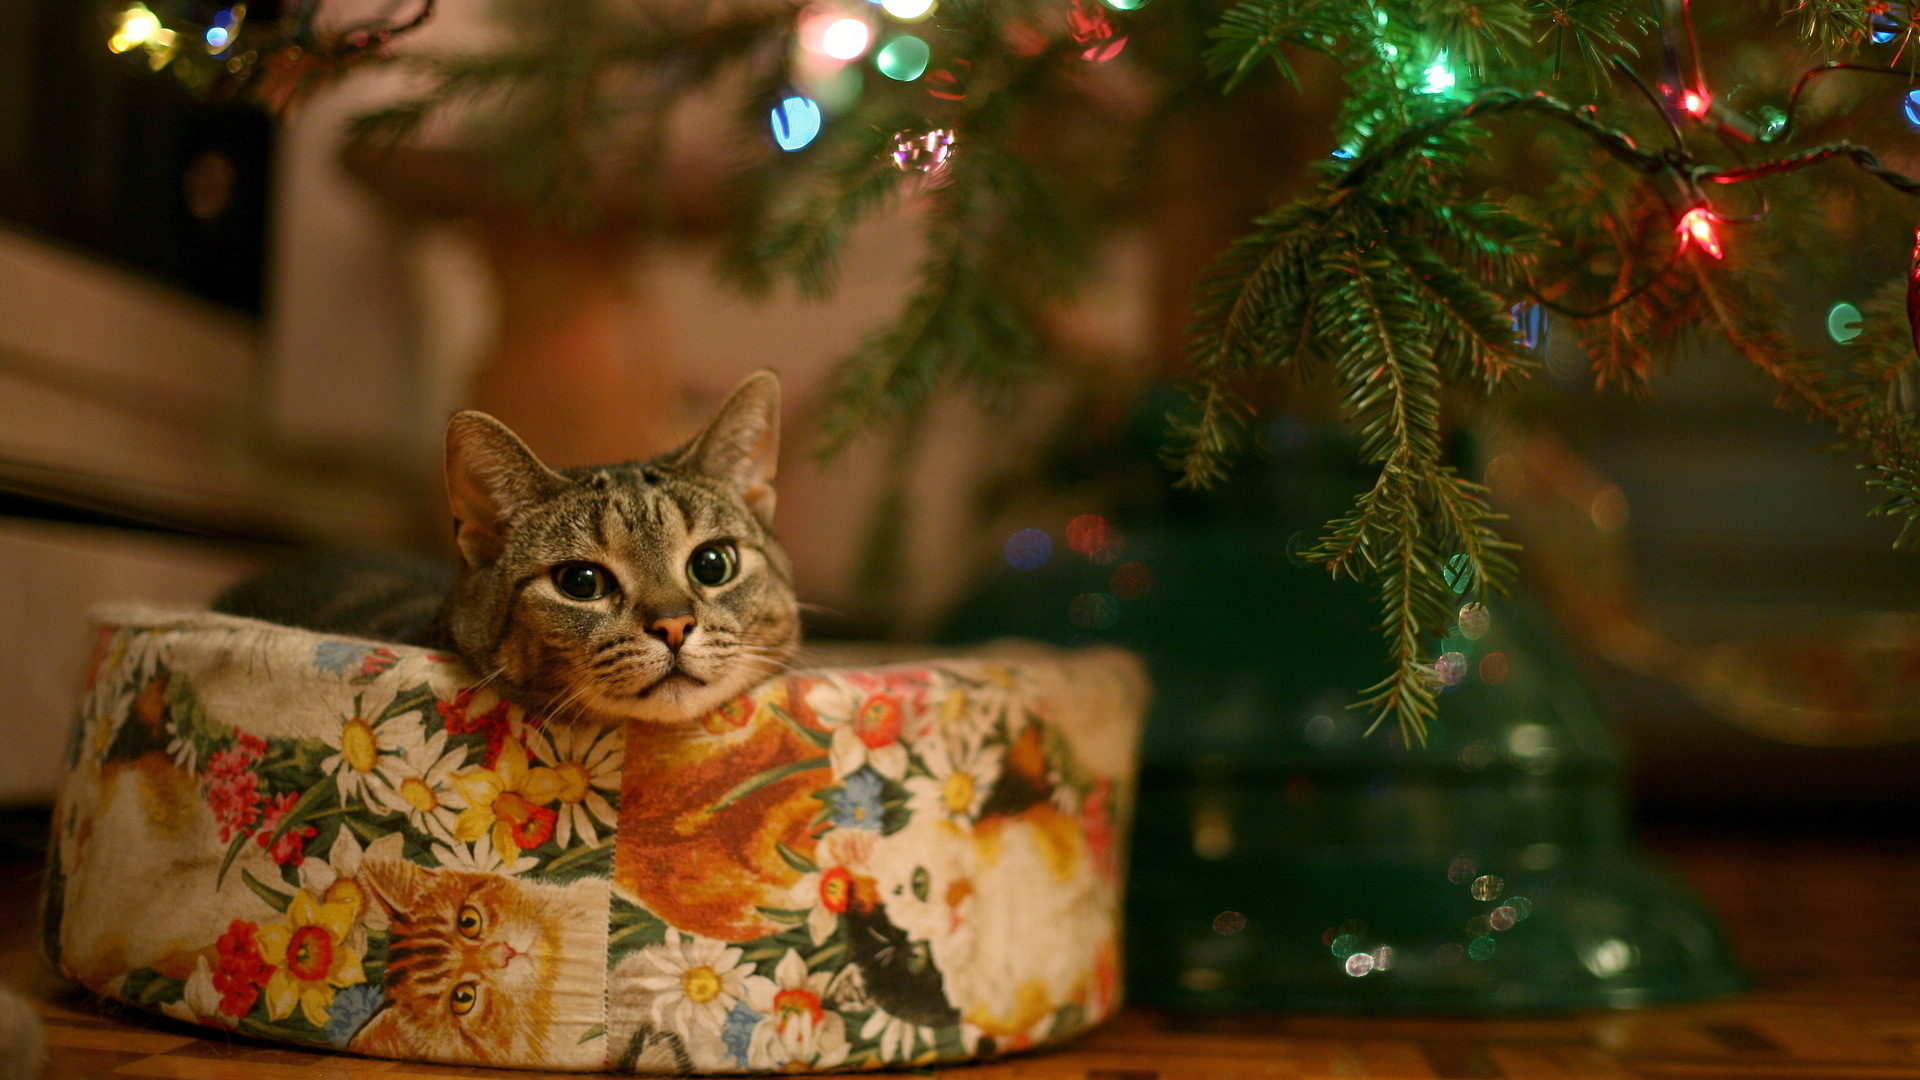 Cute christmas cat Full HD 1080p wallpaper 19201080